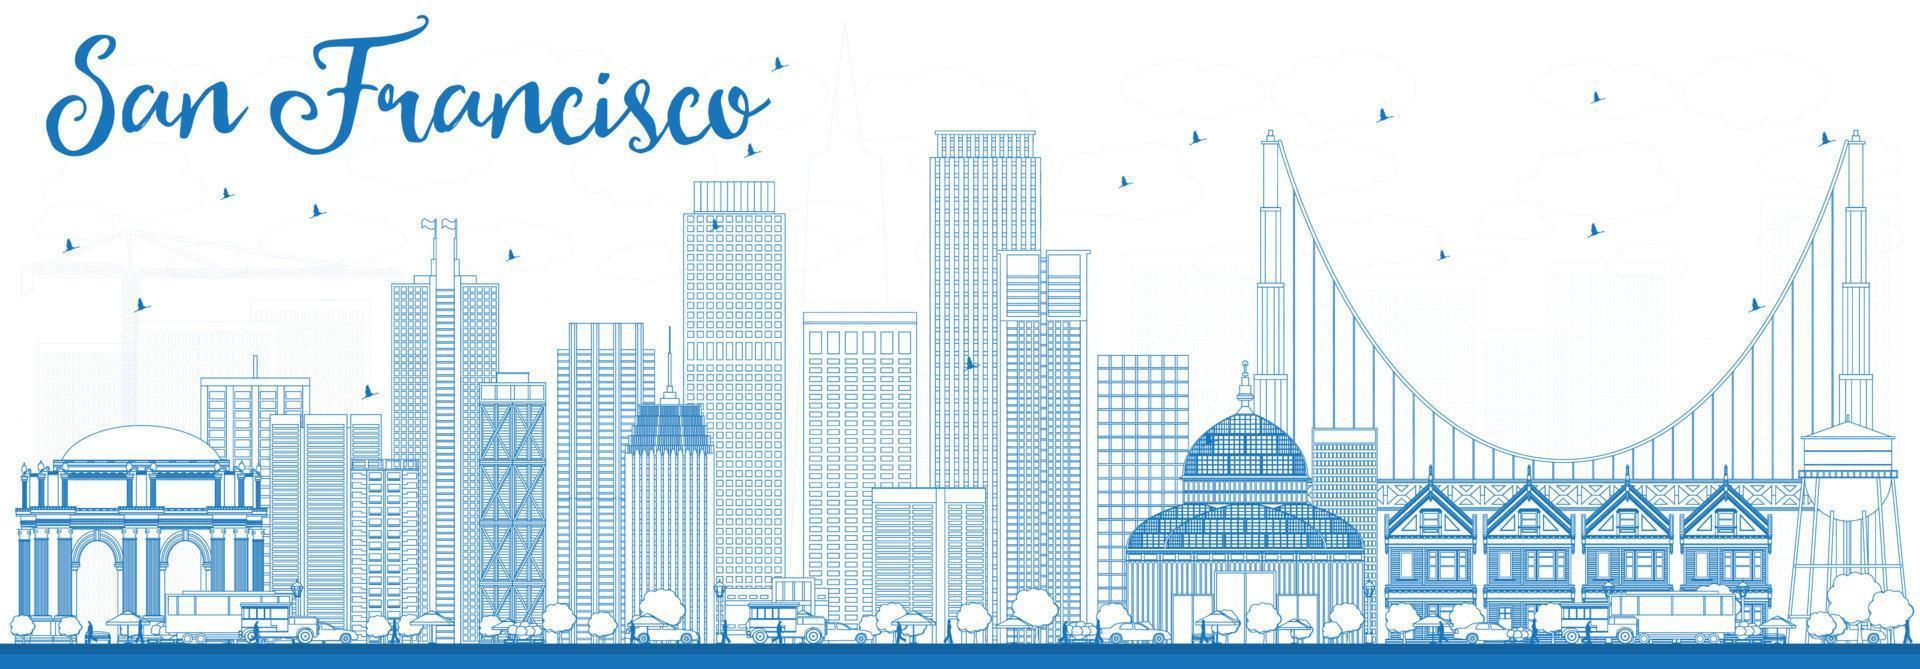 schets de skyline van san francisco met blauwe gebouwen. vector